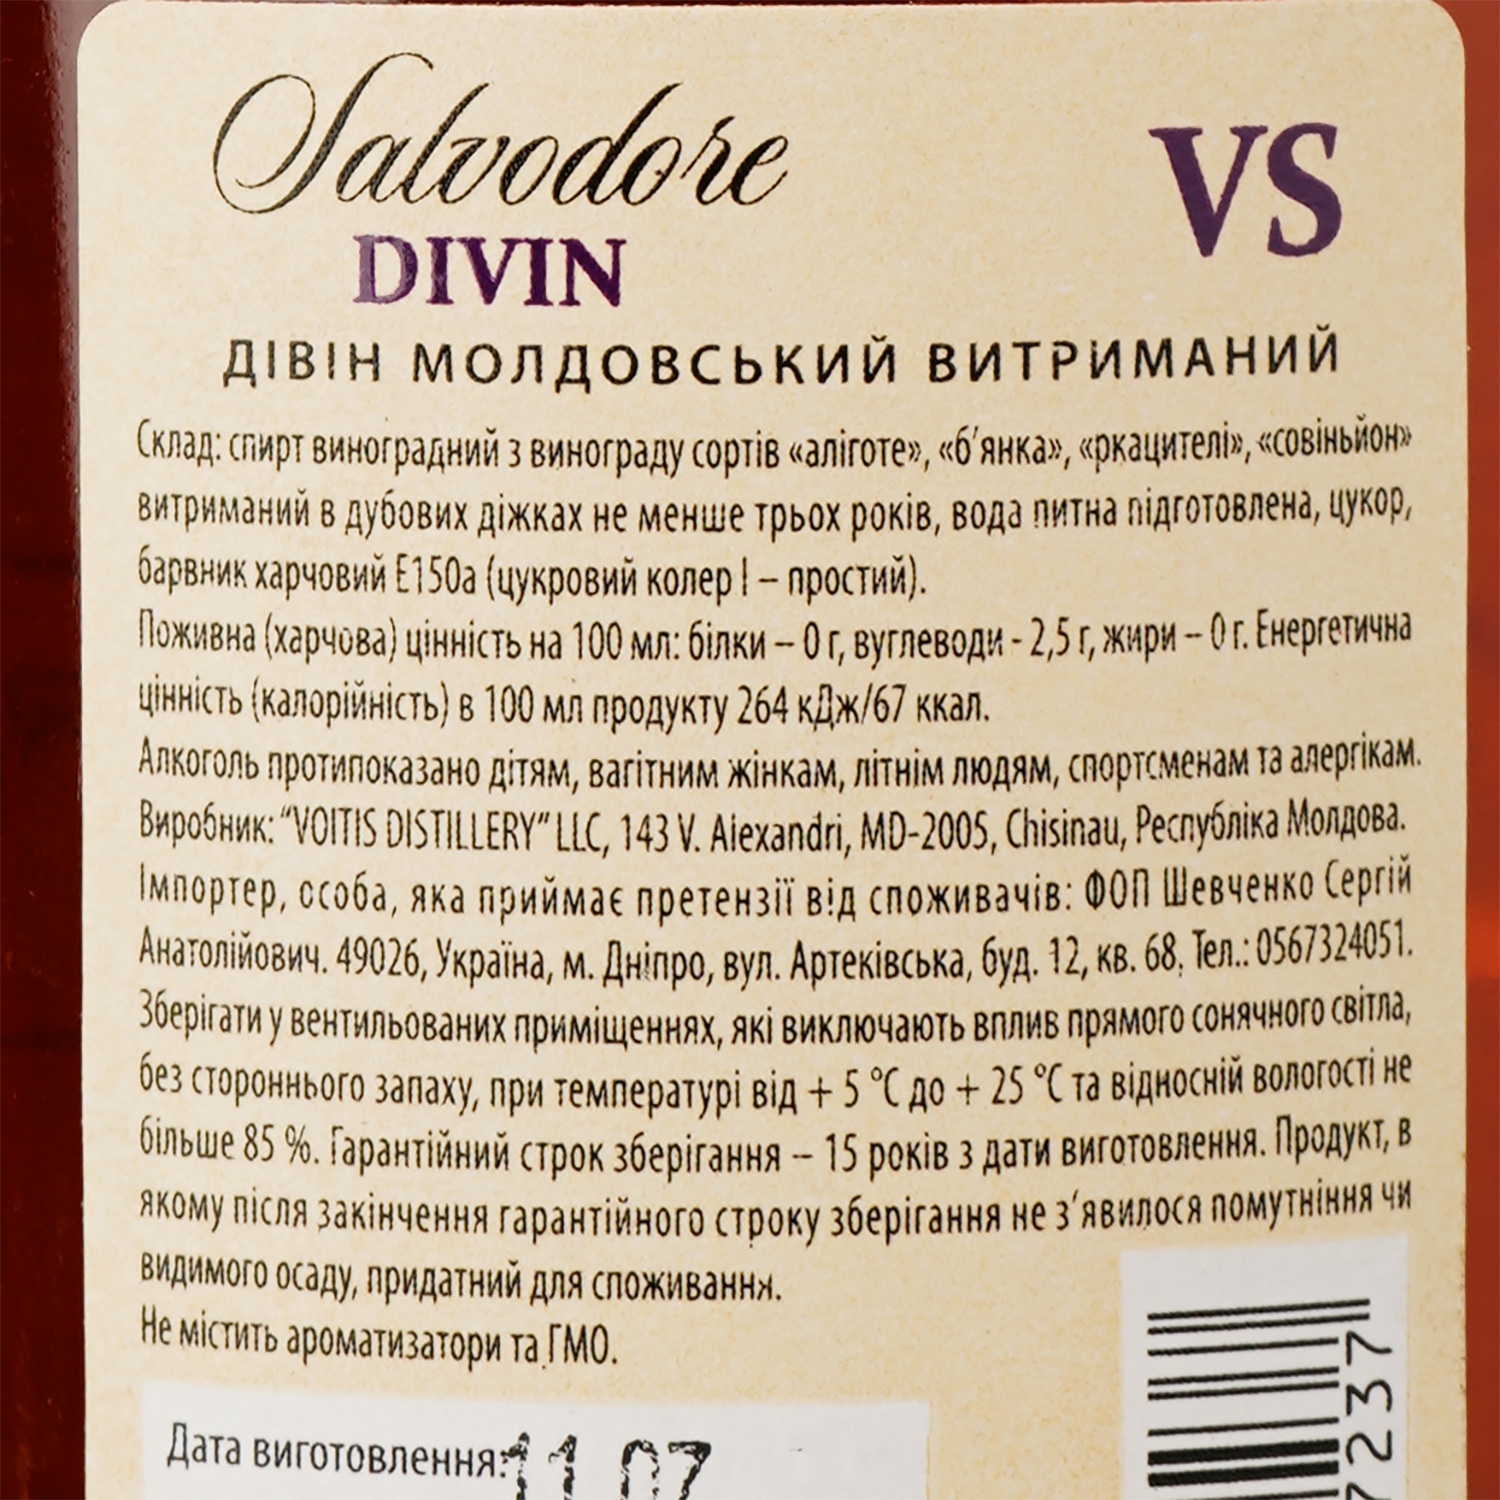 Дивин Salvodore VS, 40%, 0.5 л - фото 3